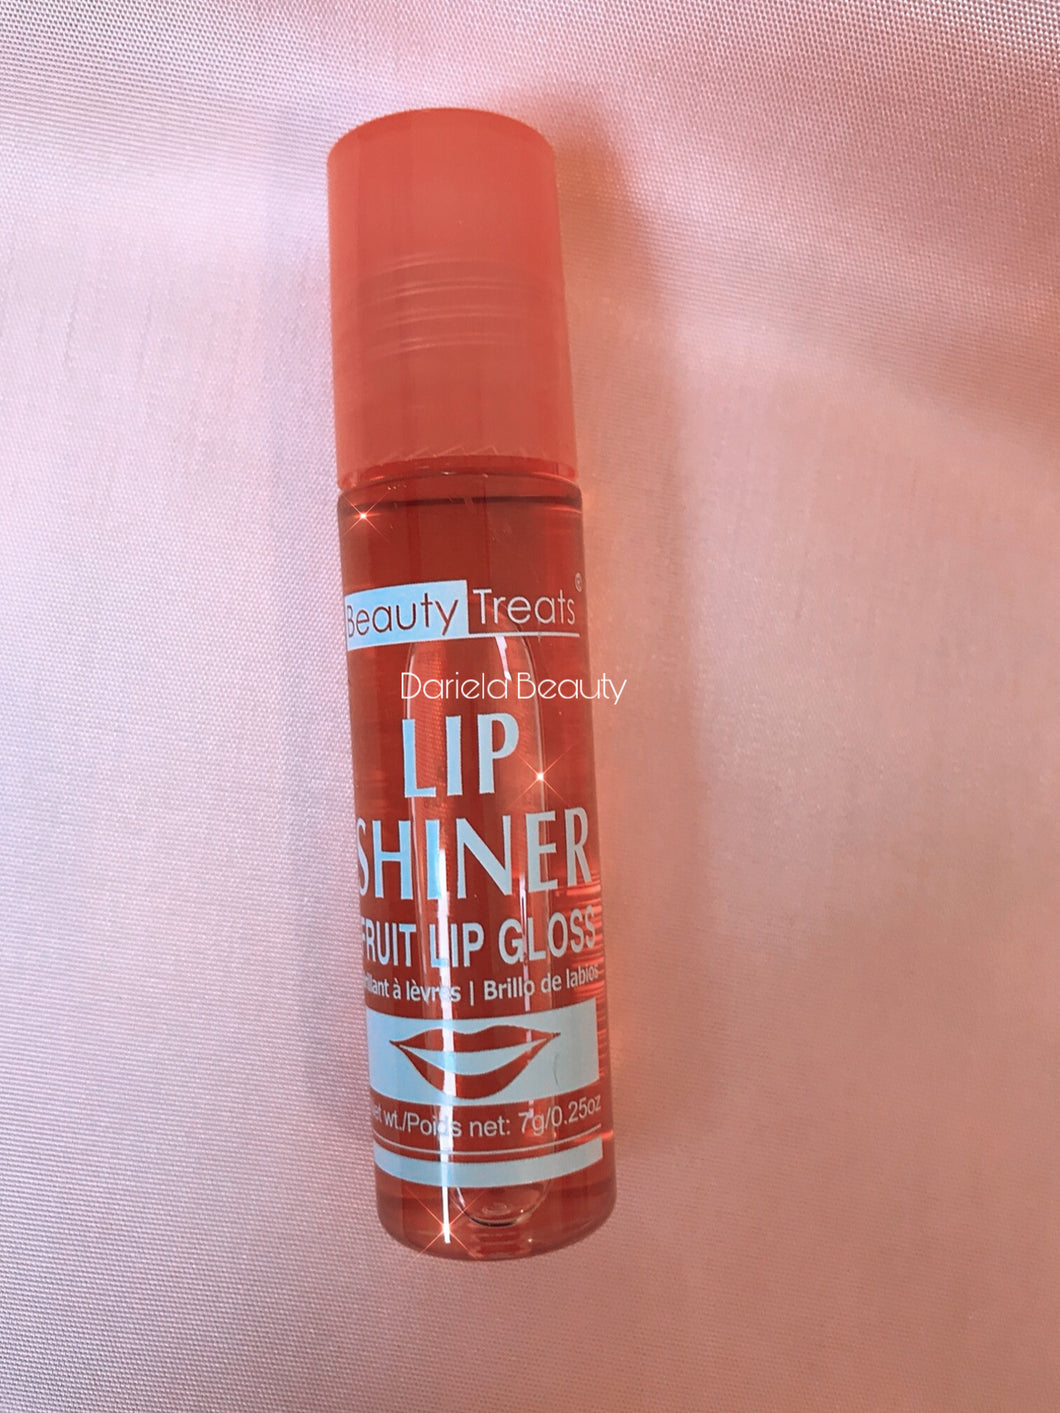 Lip gloss lip shiner - Beauty Treats - Pomme